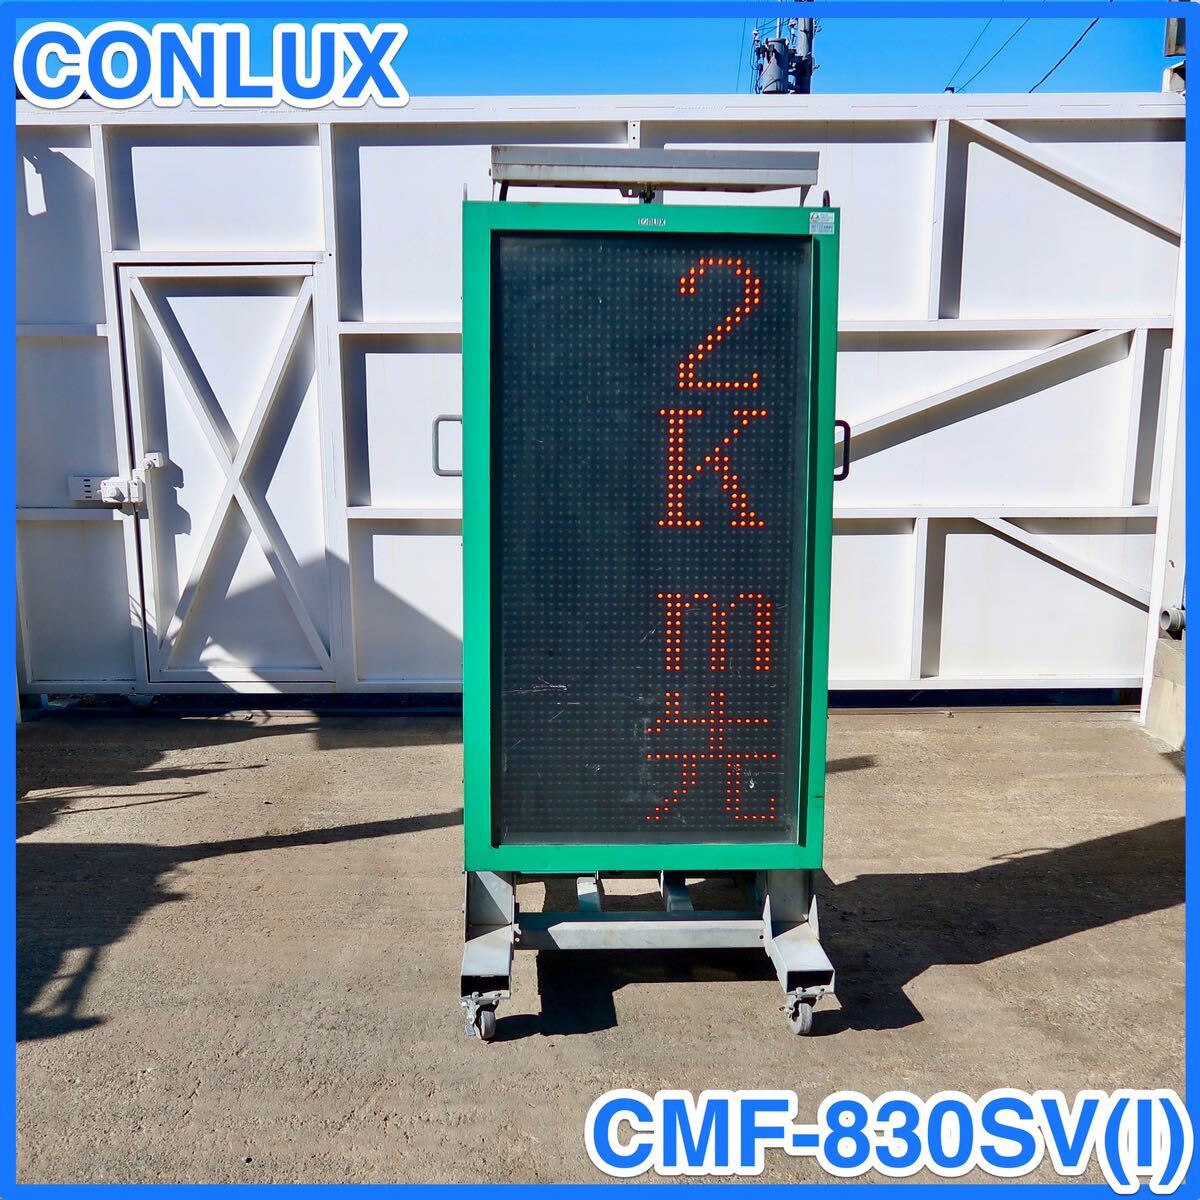 ☆ 中古 CONLUX ソーラー式LED表示機 CMF-830SV (I) コンラックス松本 メッセージボード 電光掲示板 ☆ 1個_画像1